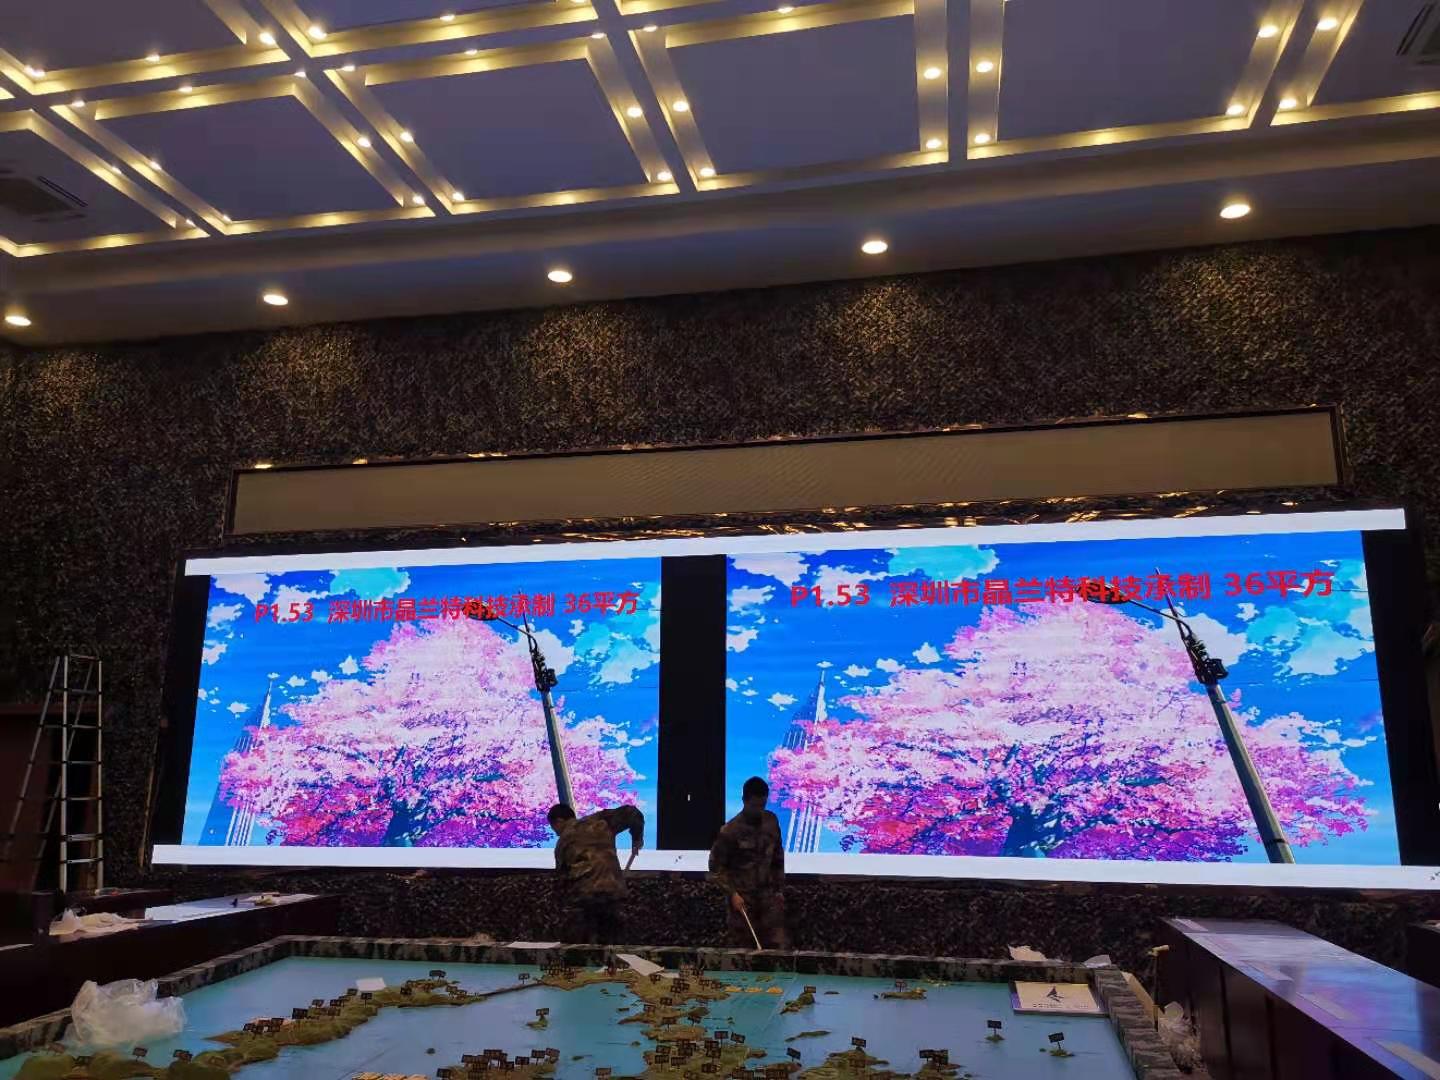 深圳晶兰特告诉您LCD液晶屏和LED显示屏有什么区别？各自应用领域是什么？